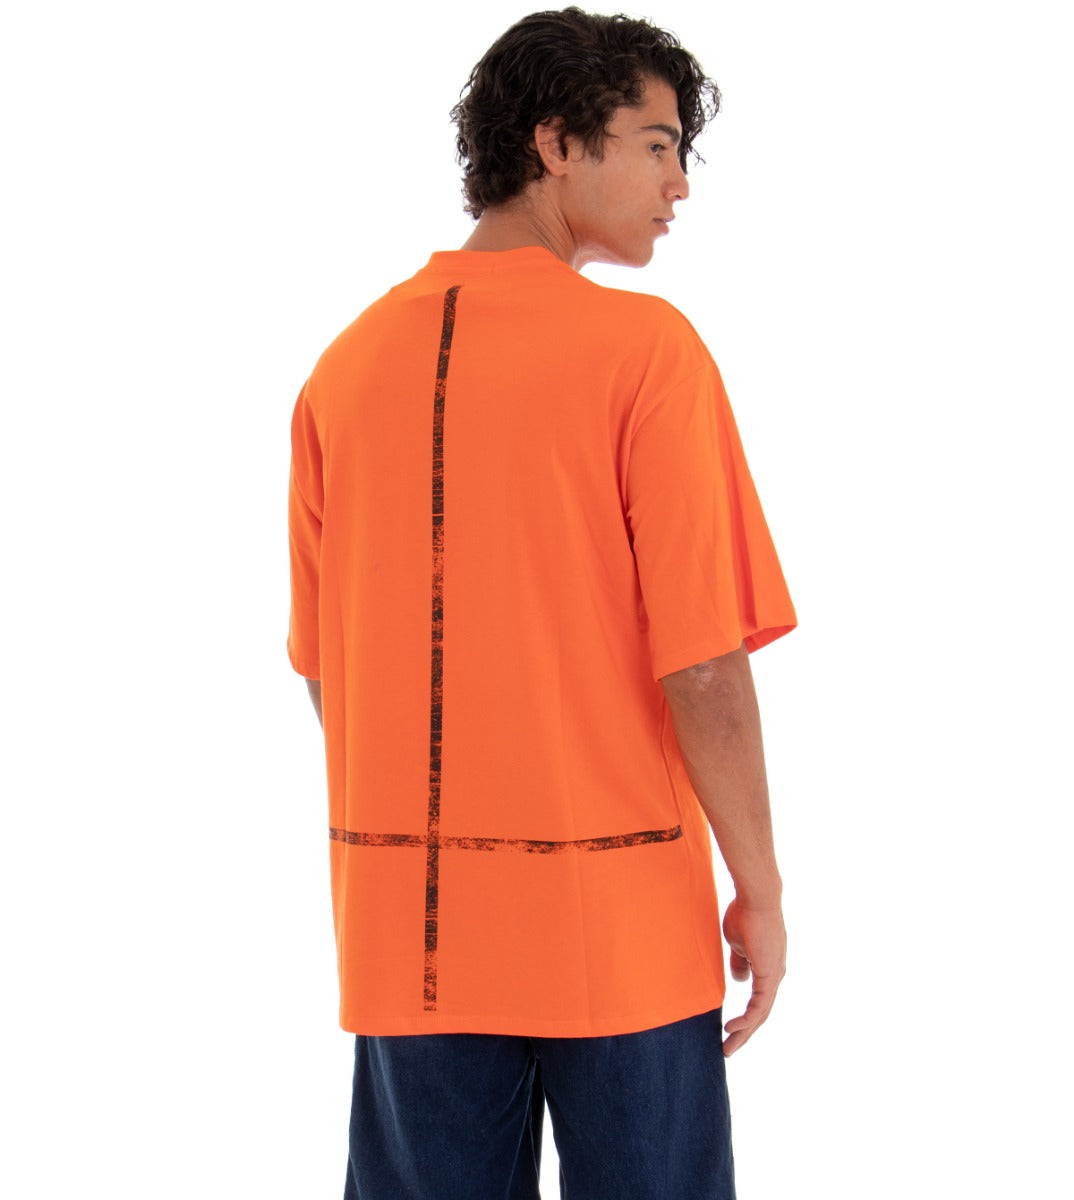 T-shirt Uomo Maglia Maniche Corte Over Tinta Unita Arancione Stampa Retro GIOSAL